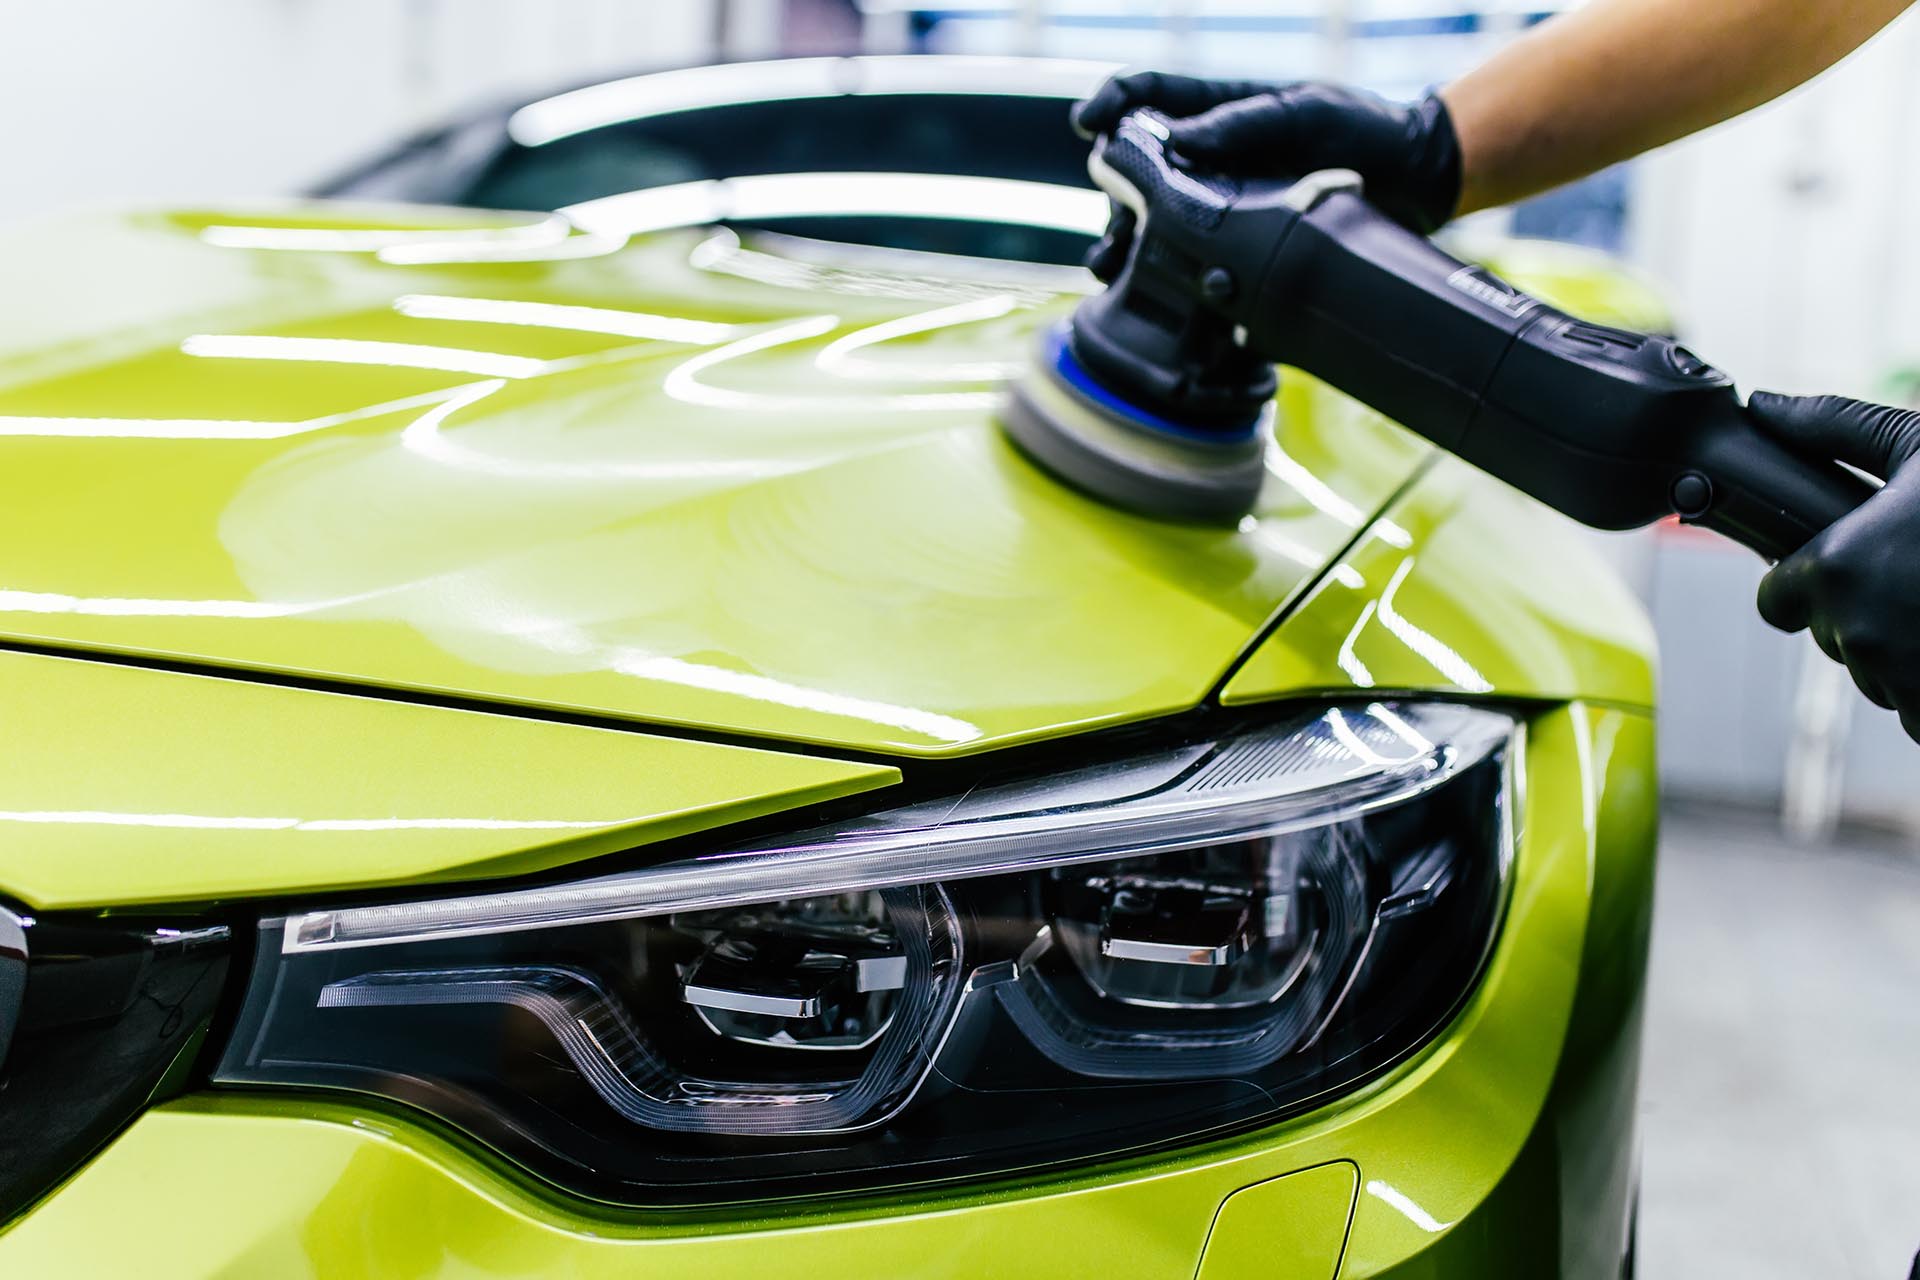 Polishing a green BMW